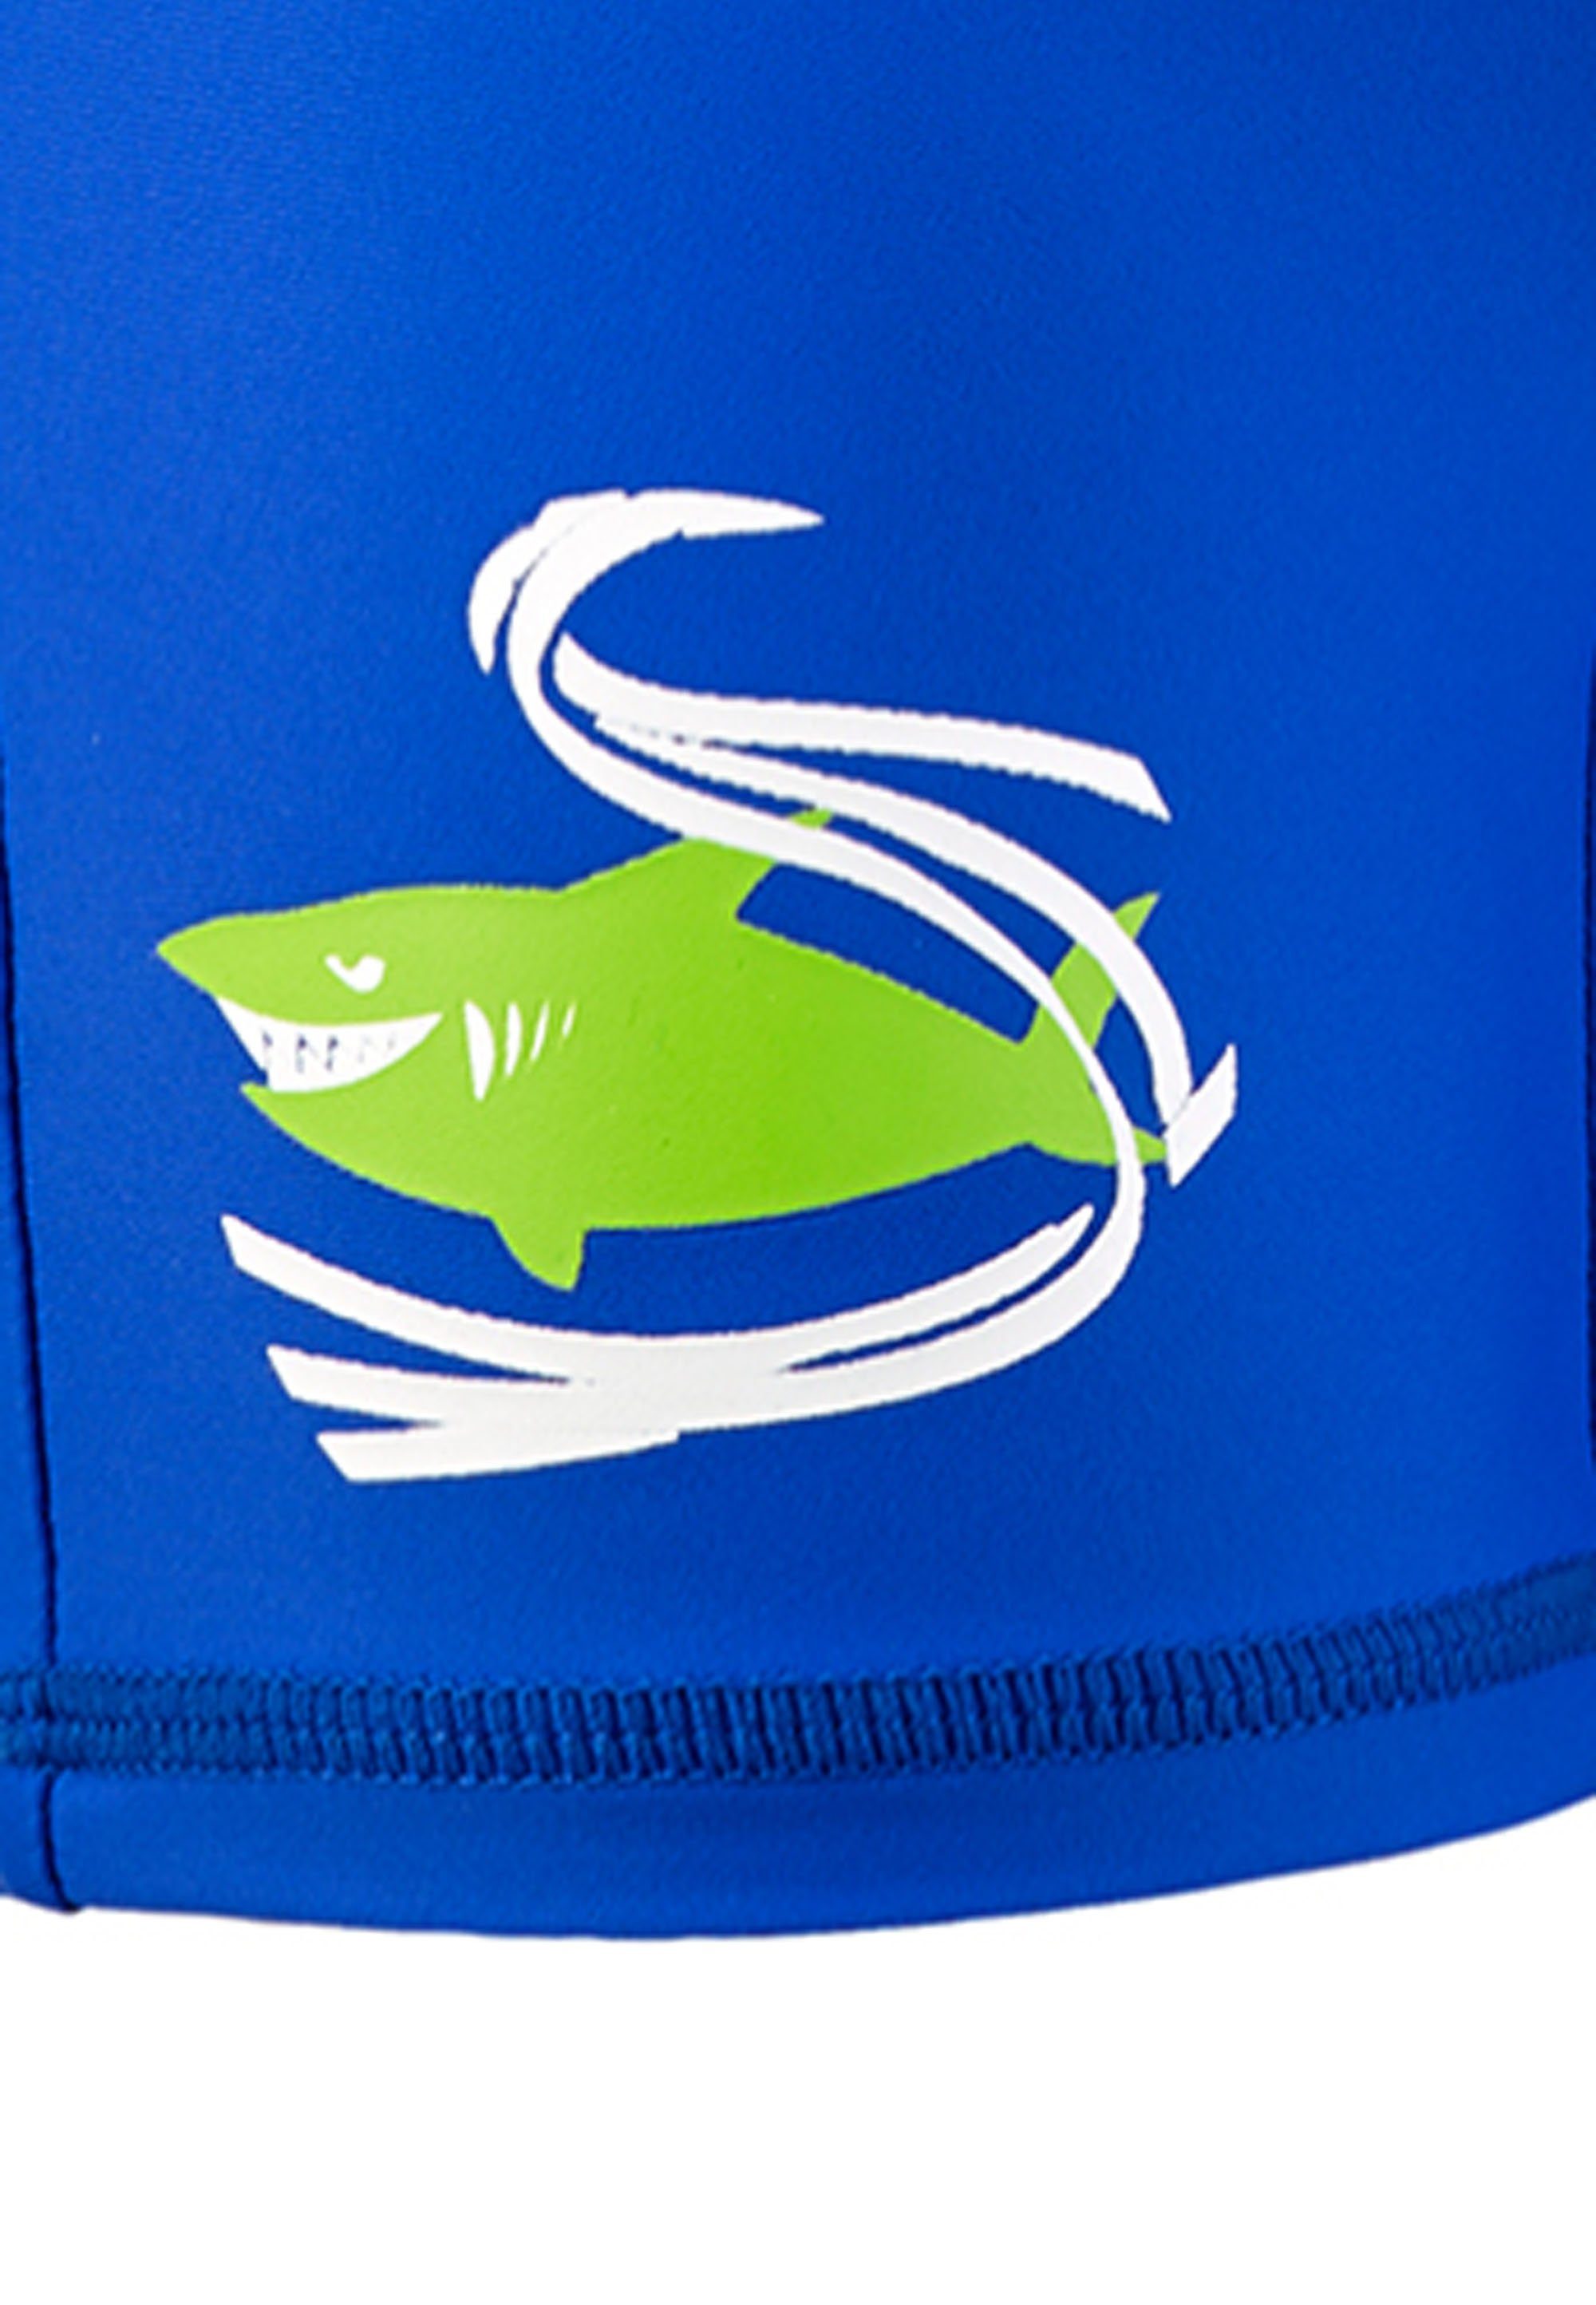 Beermann Beco Einteiler schnell UV50+ ultraweich Sonnenschutz Schutzanzug Badeanzug blau BECO-SEALIFE® perfekter und trocknend (1-St)